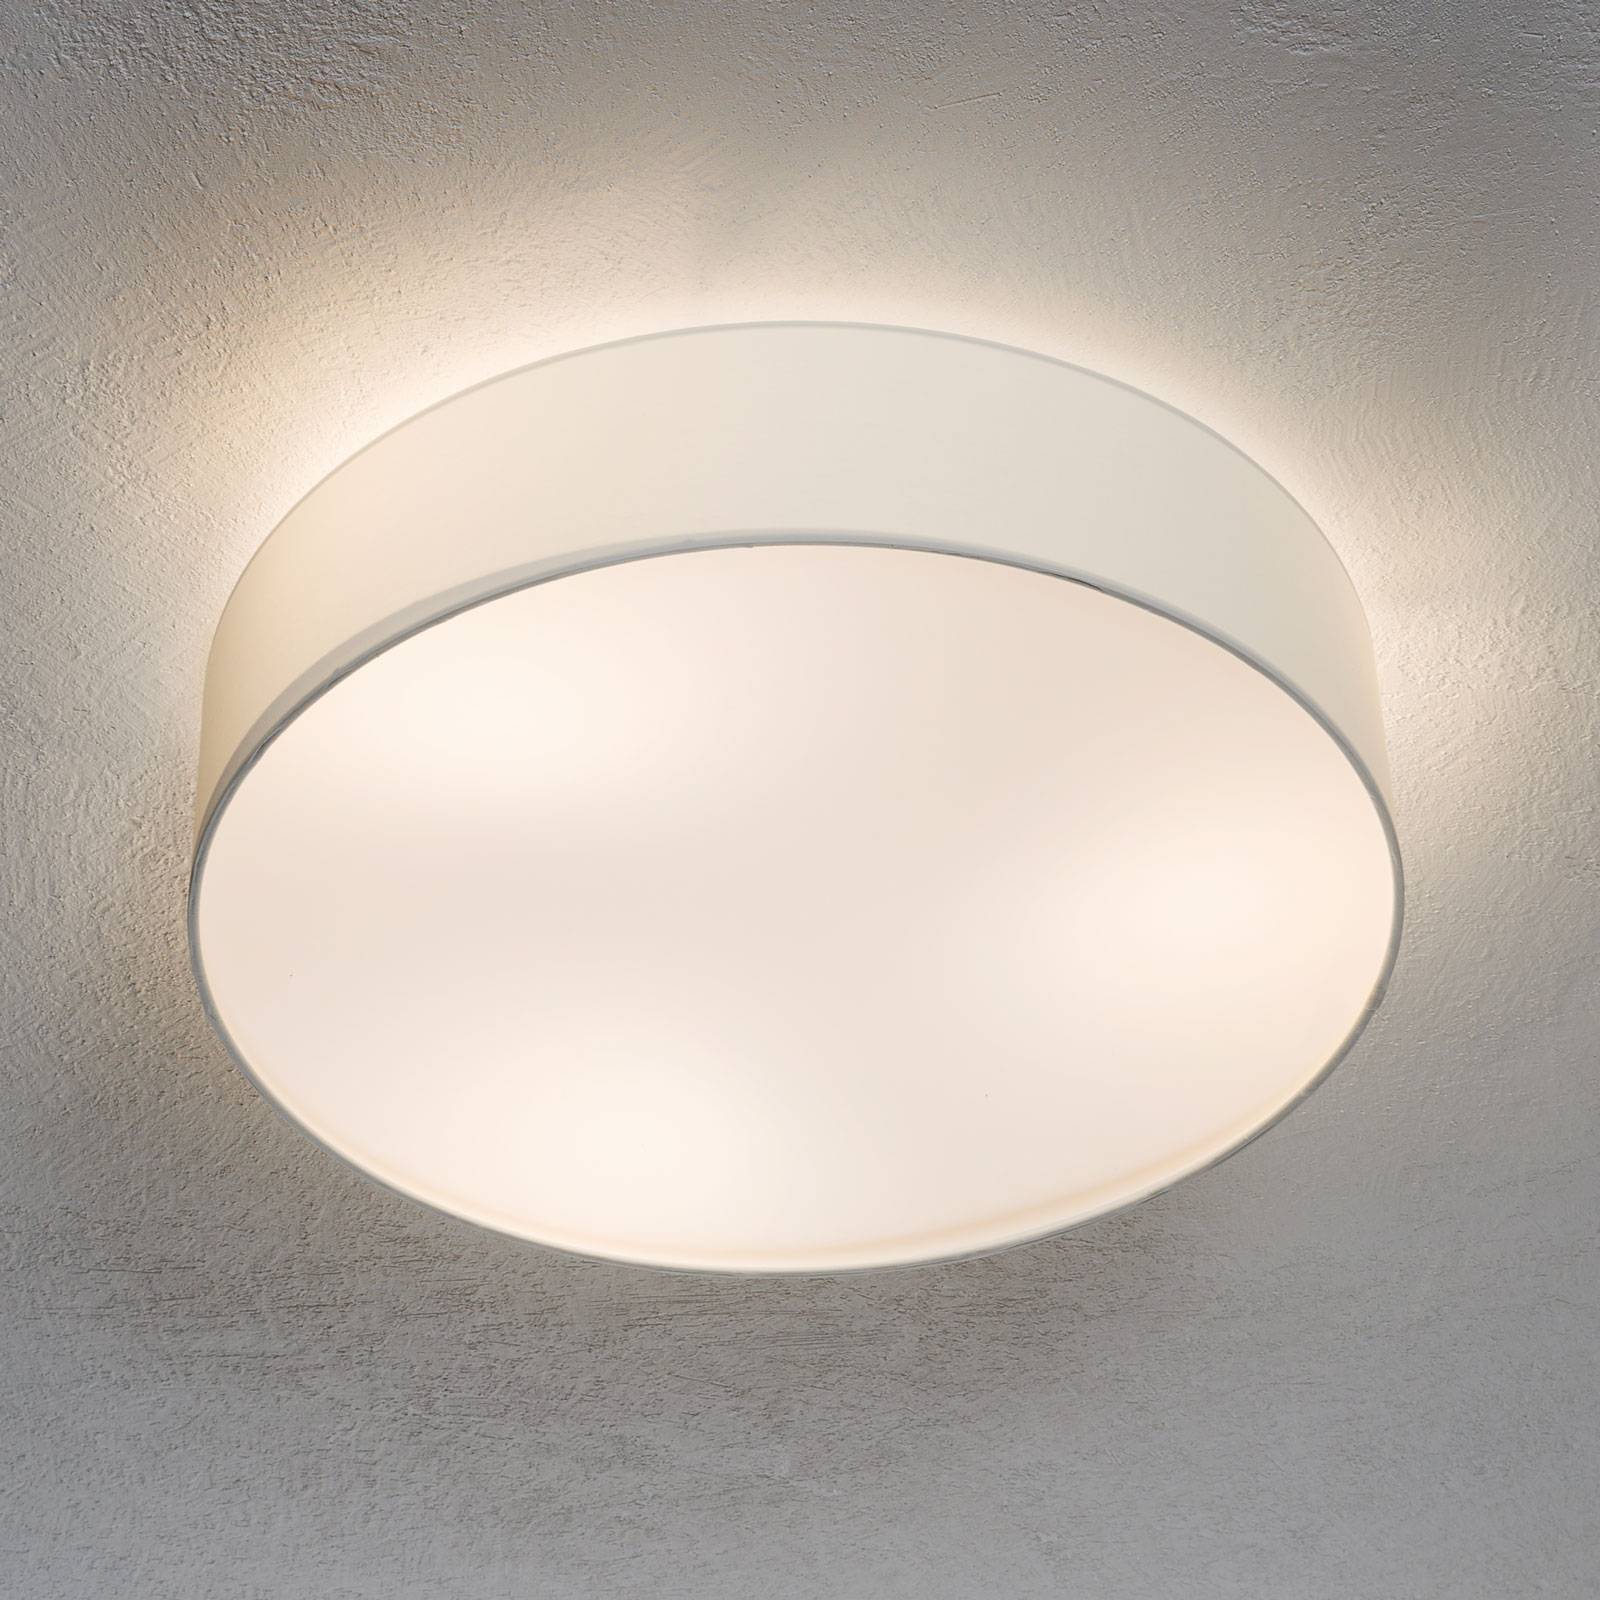 EGLO Deckenlampe Pasteri, weiß, 57 cm